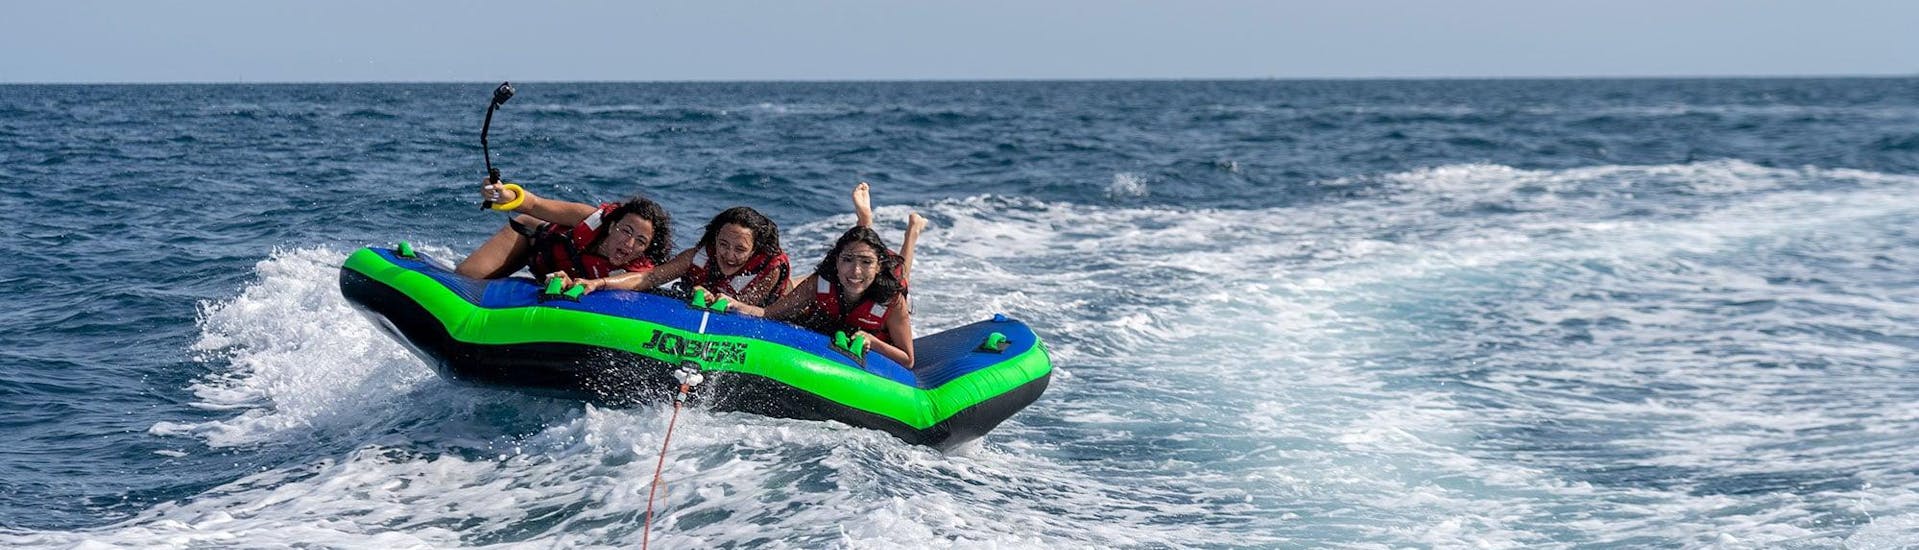 Drei Frauen an Bord einer Sea Riders-Schlauchmatratze, die von einem Boot vor der Küste Barcelonas abgeschleppt wurde.